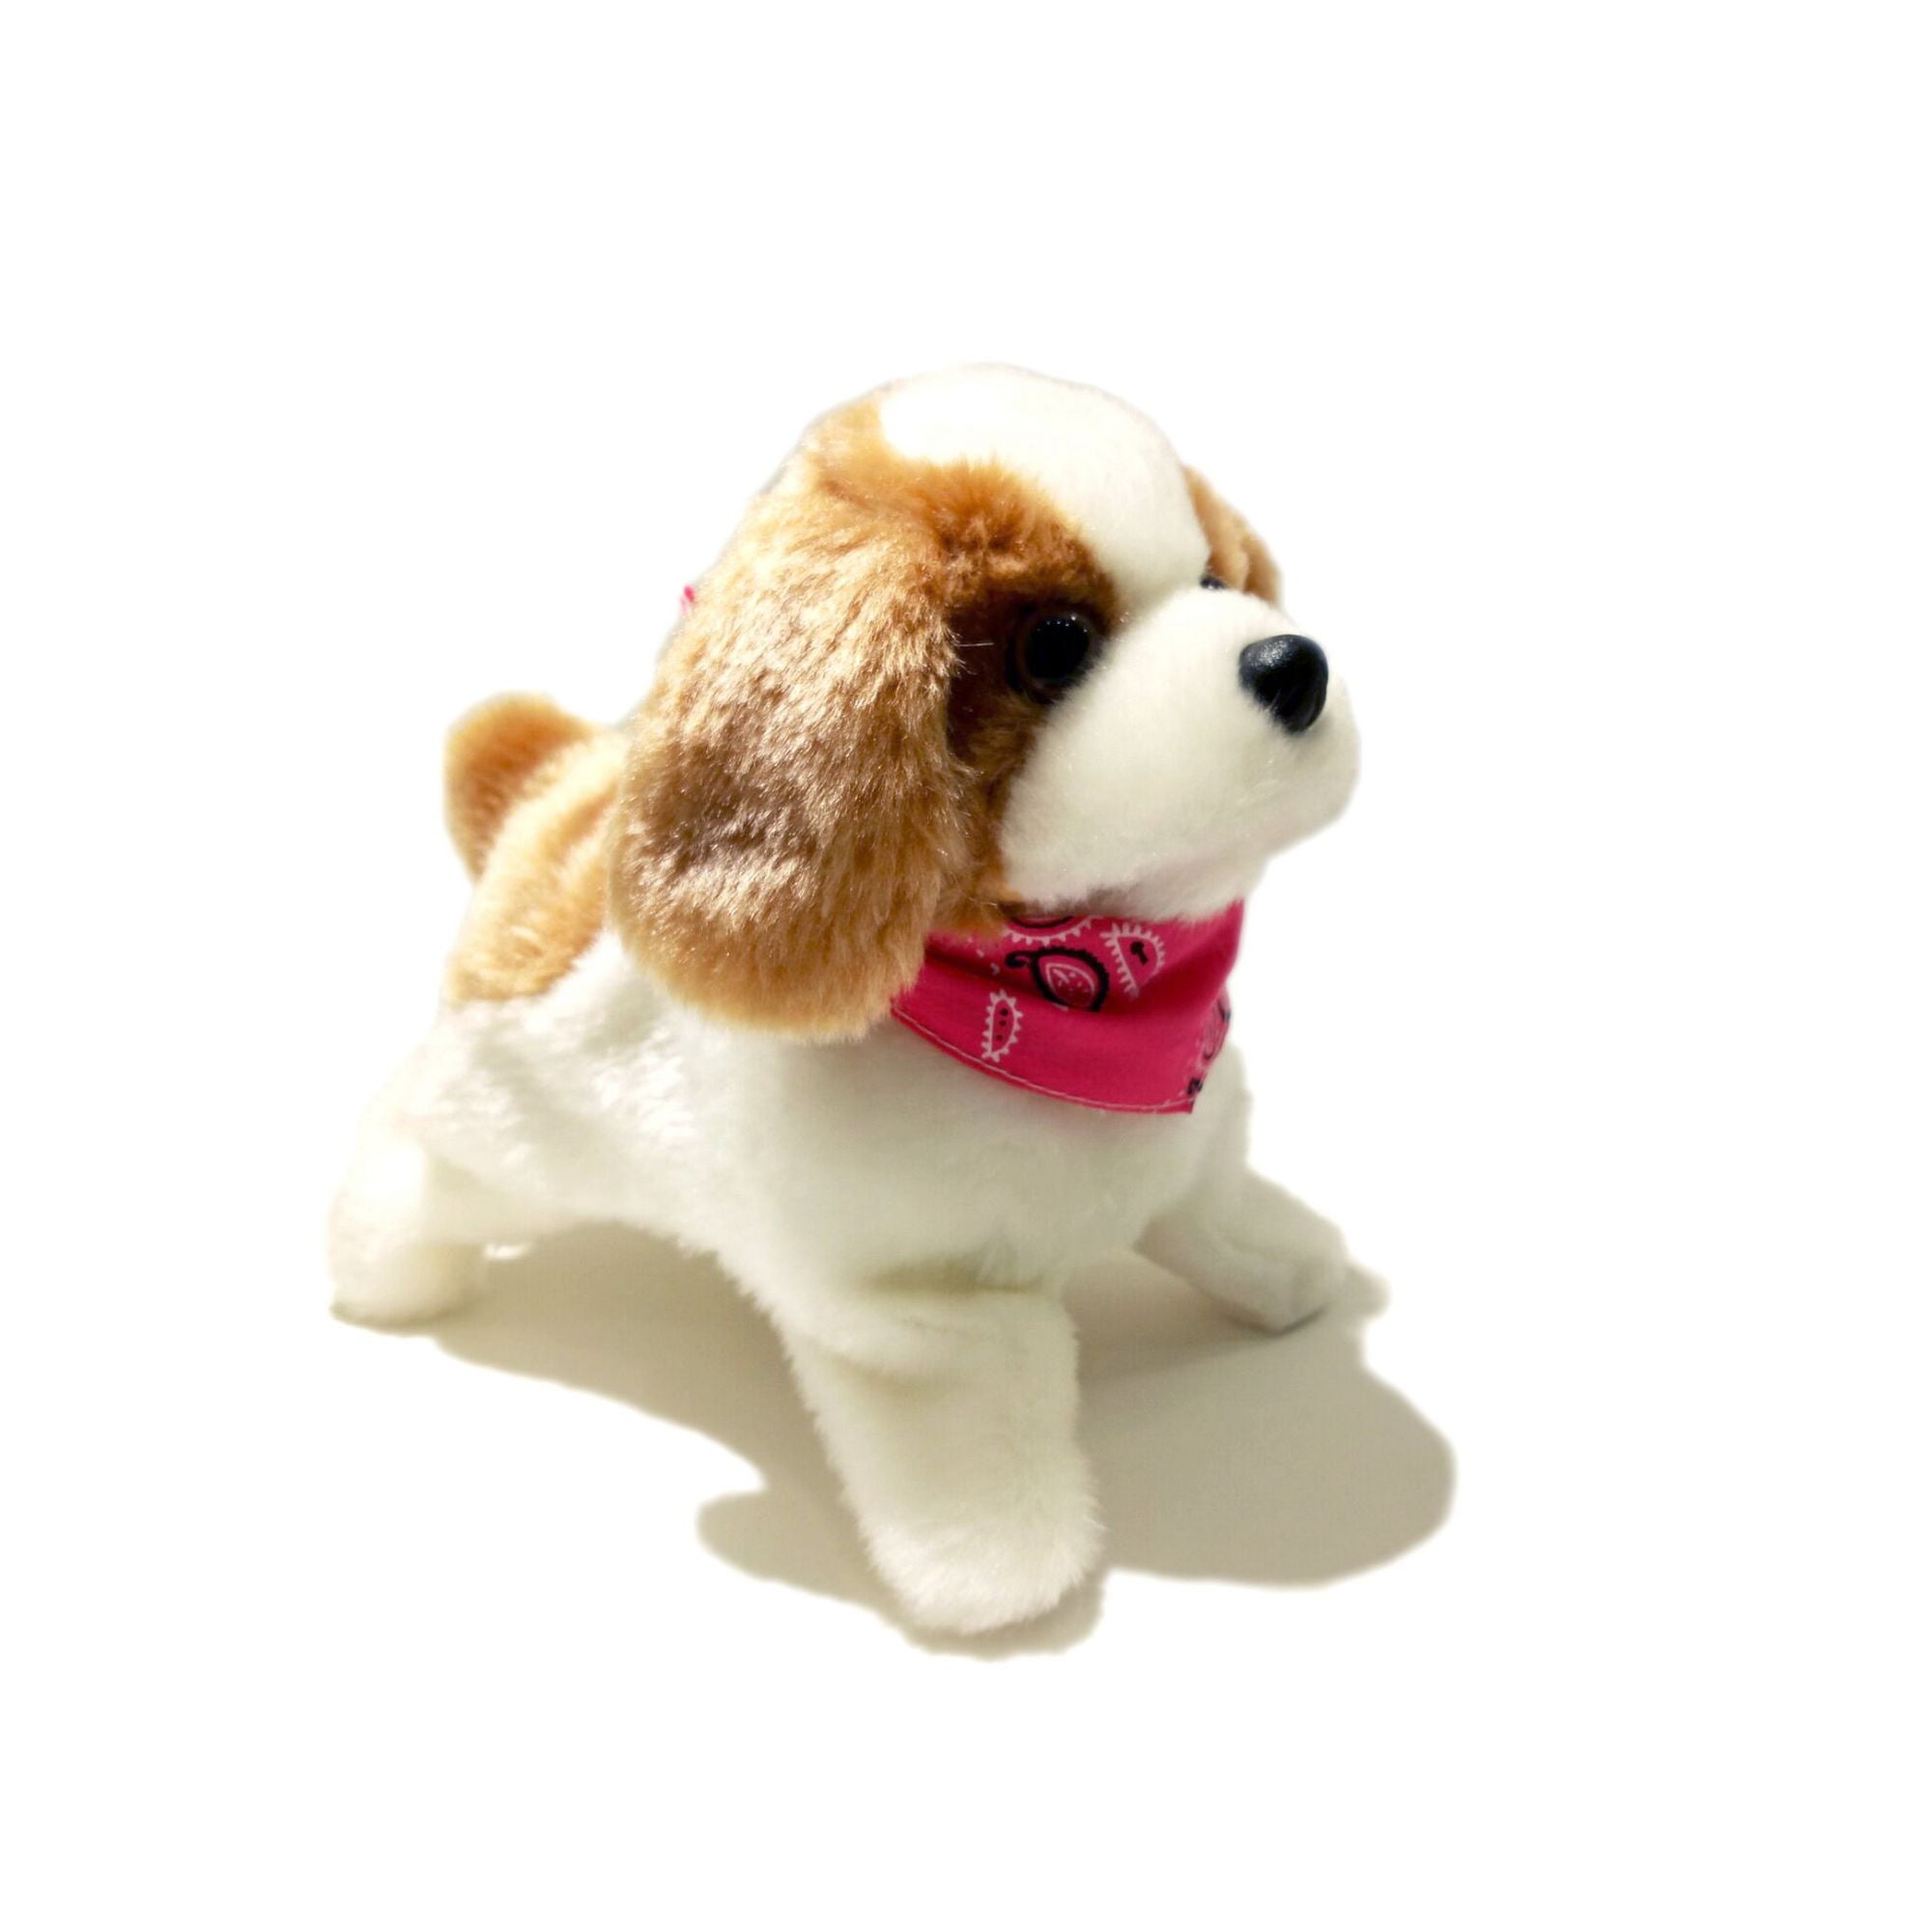 somersault dog toy